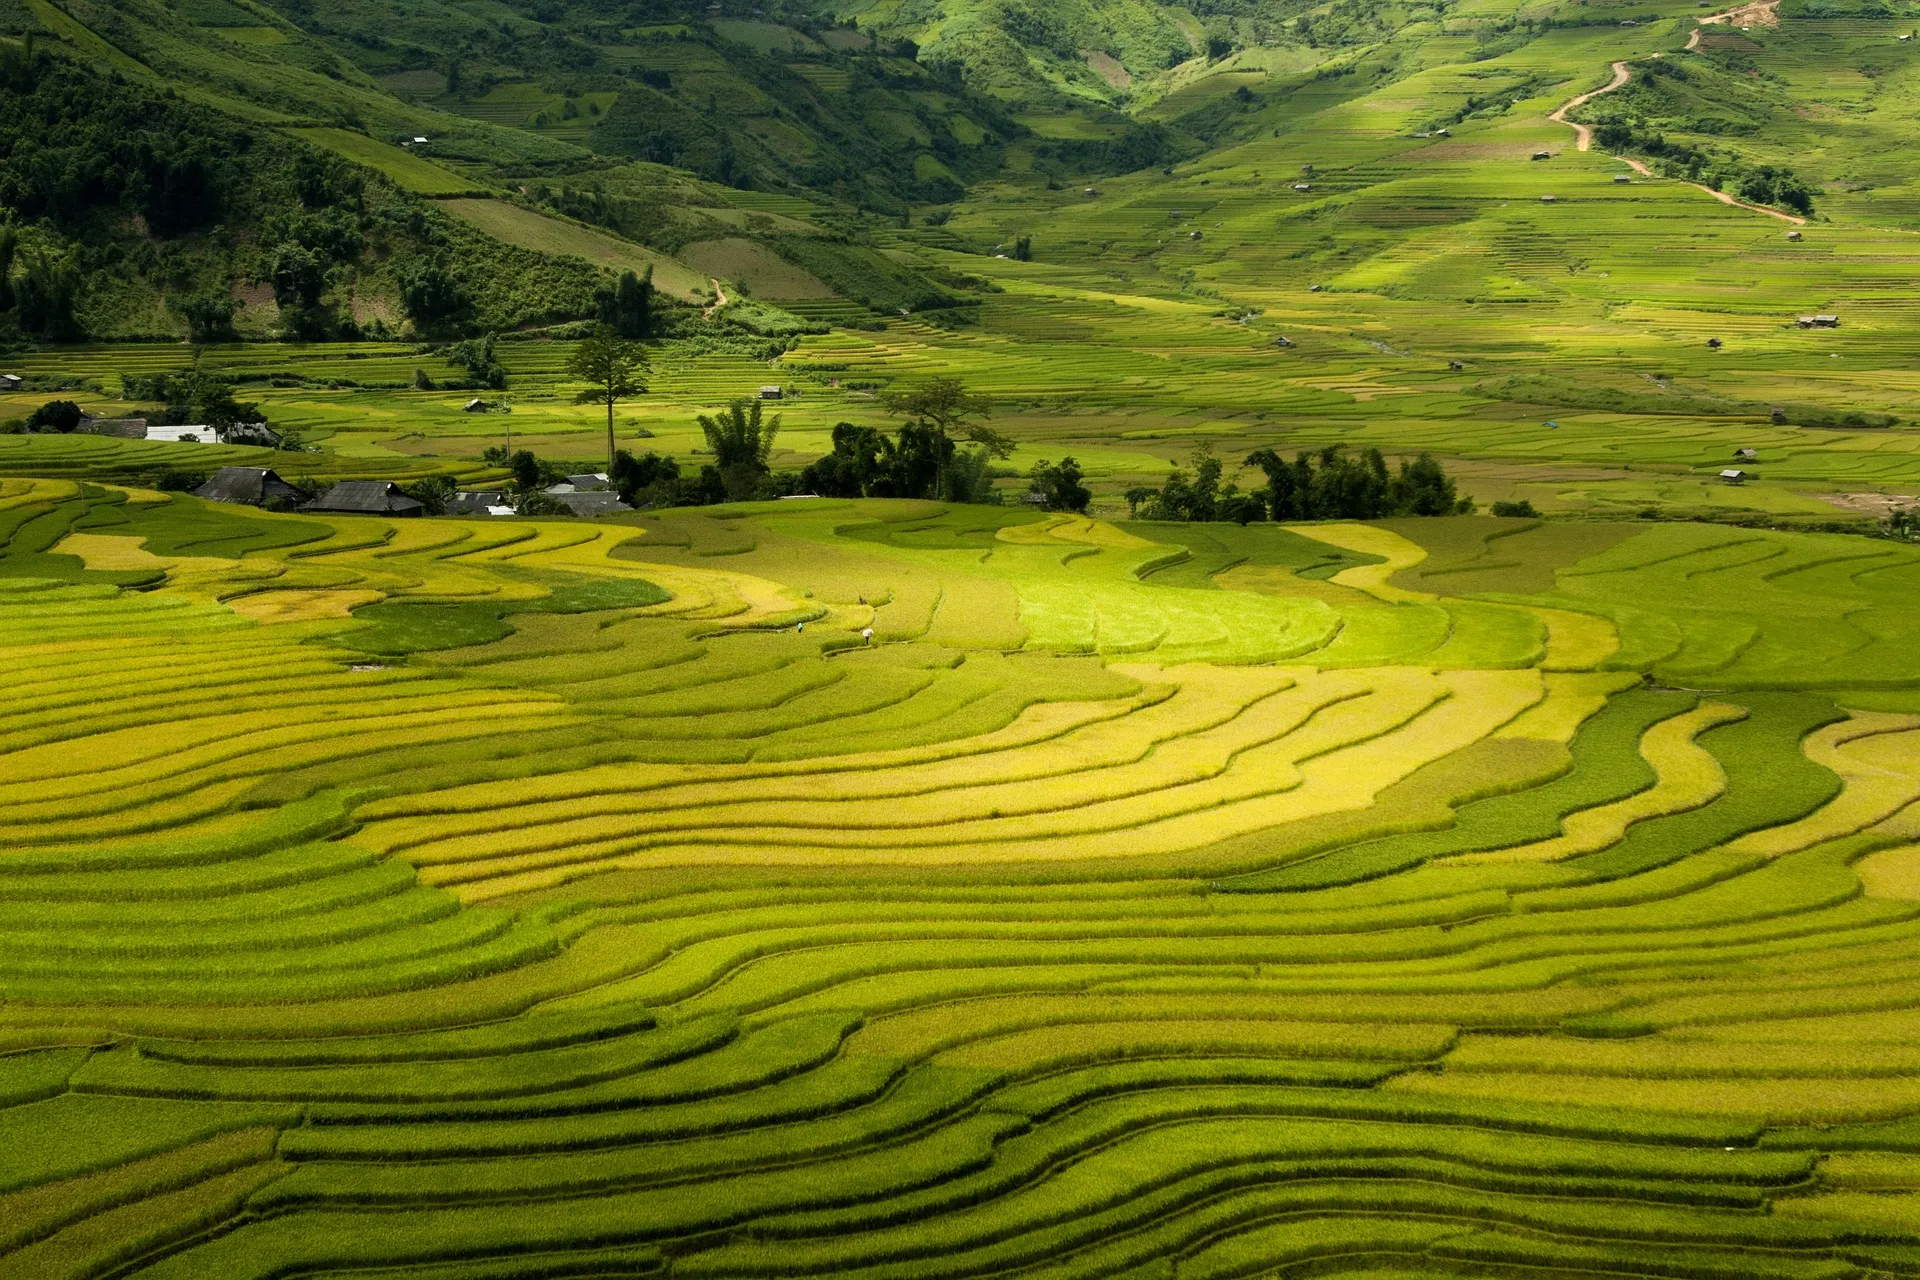 Terrace fields in Muong Hoa Valley